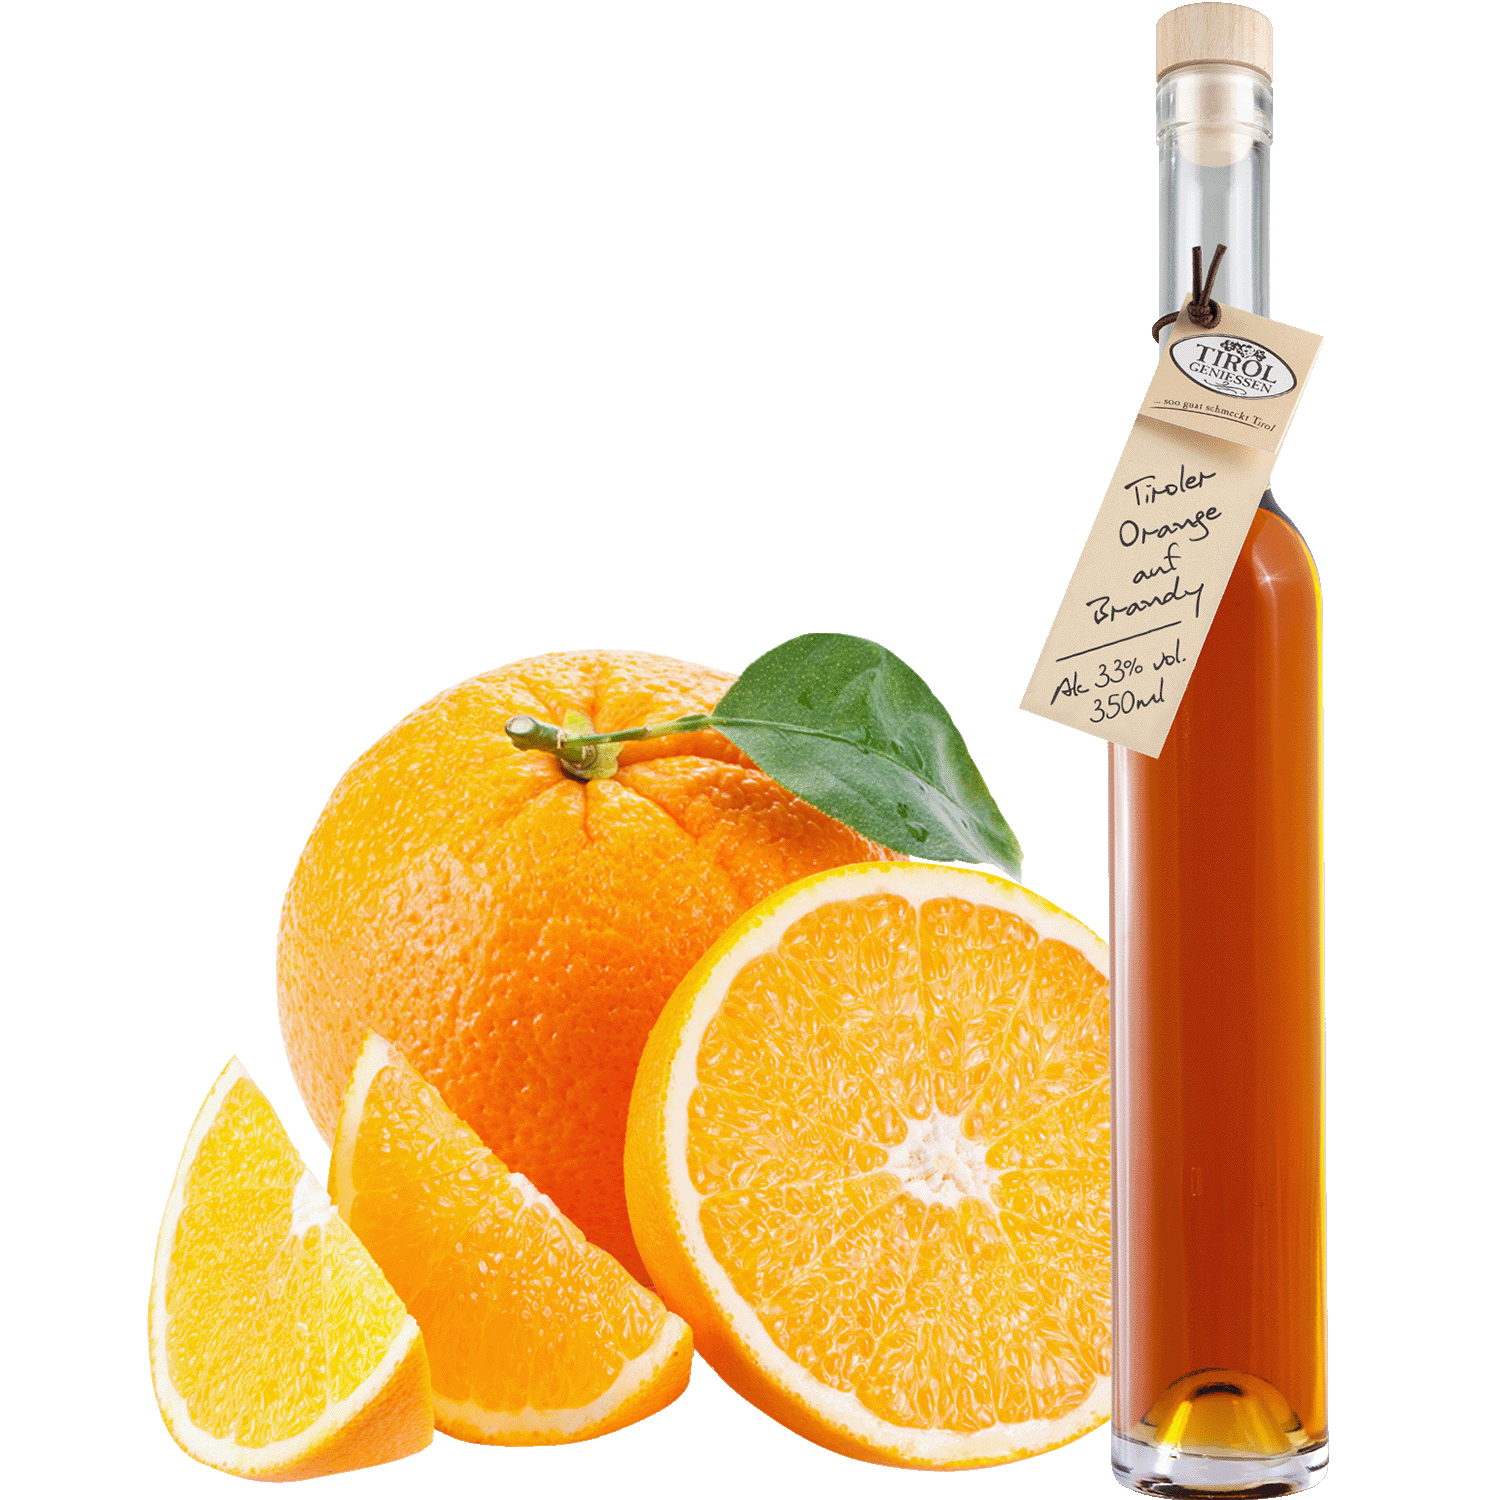 Orange Brandy Liqueur in gift bottle from Austria from Tirol Geniessen